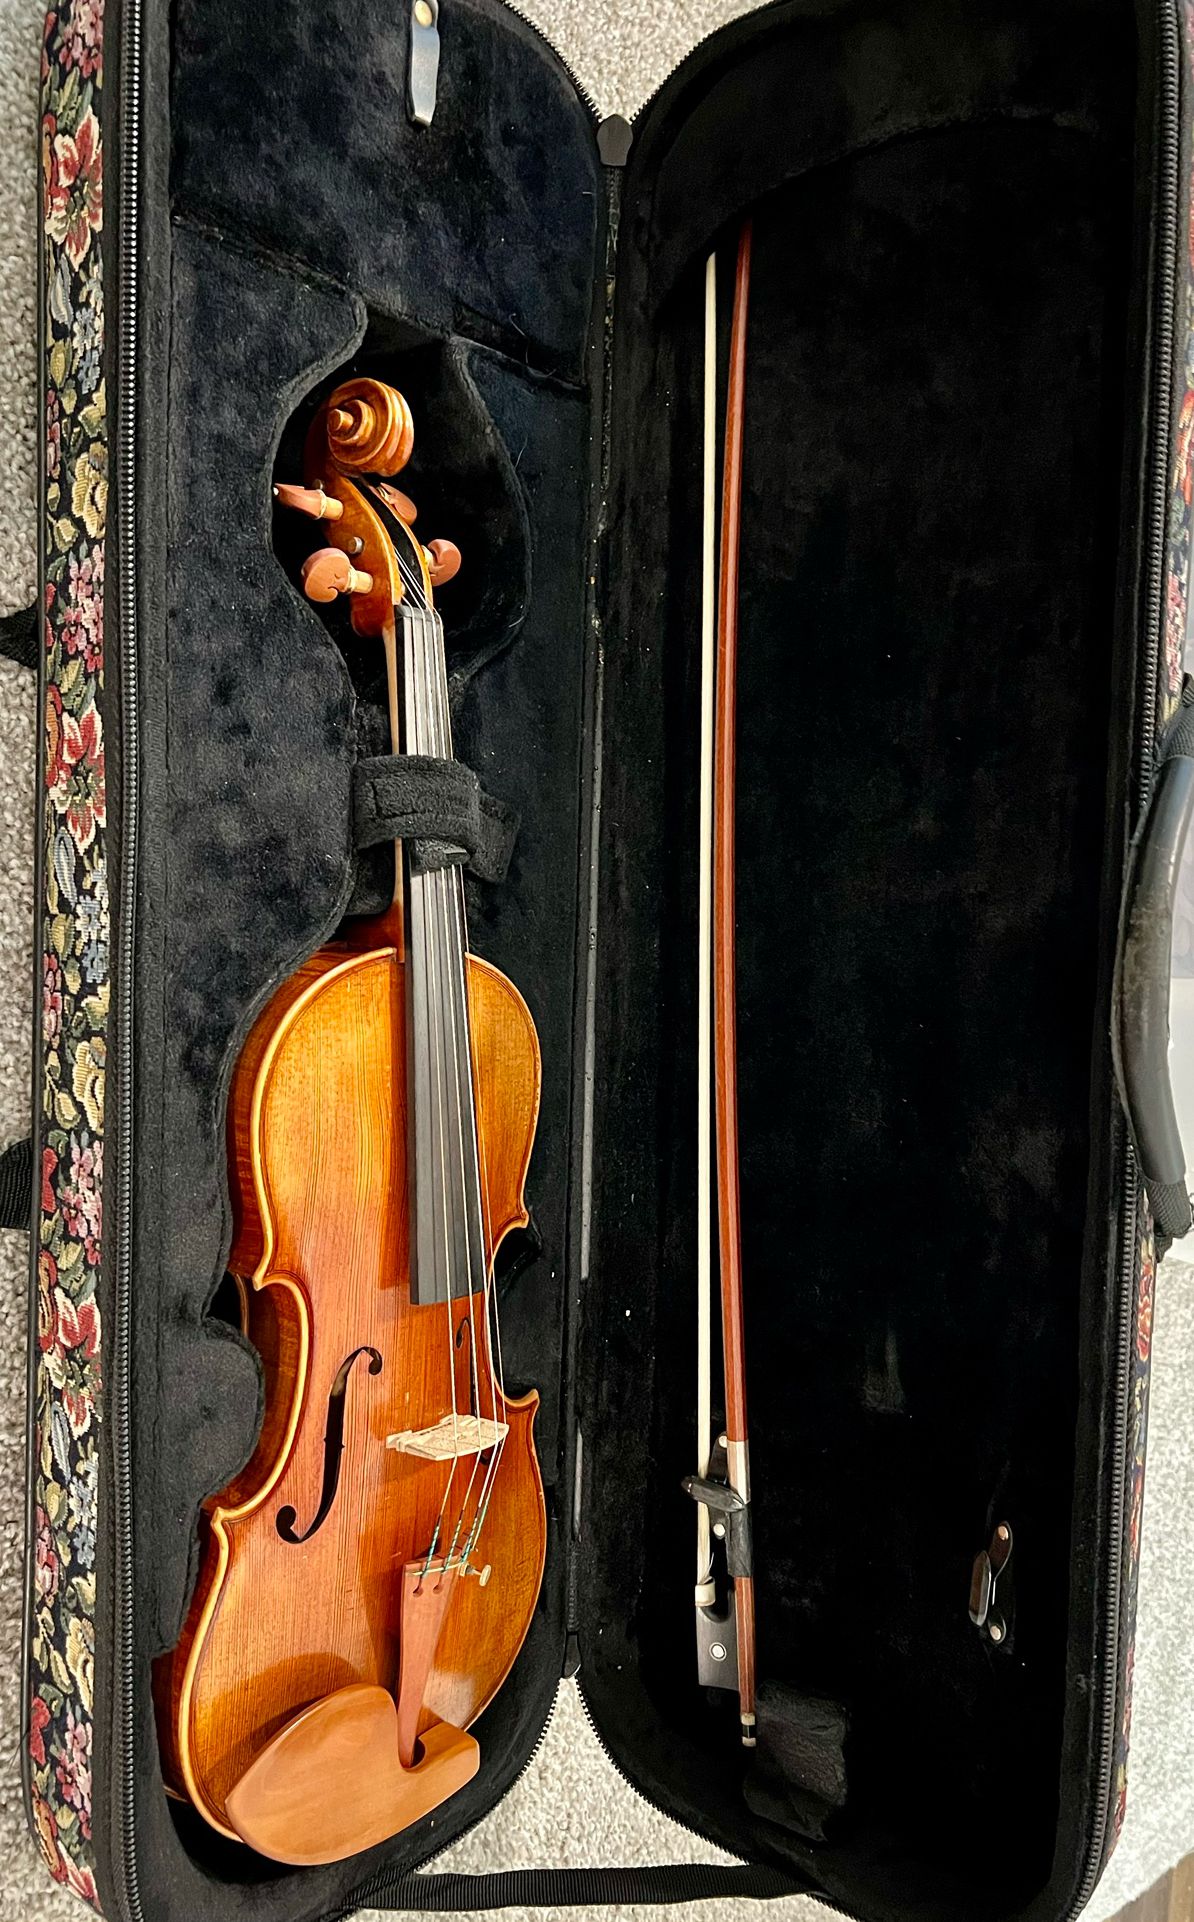 Samuel Chen Handmade Violin - Model SV300-355-AN 4/4 